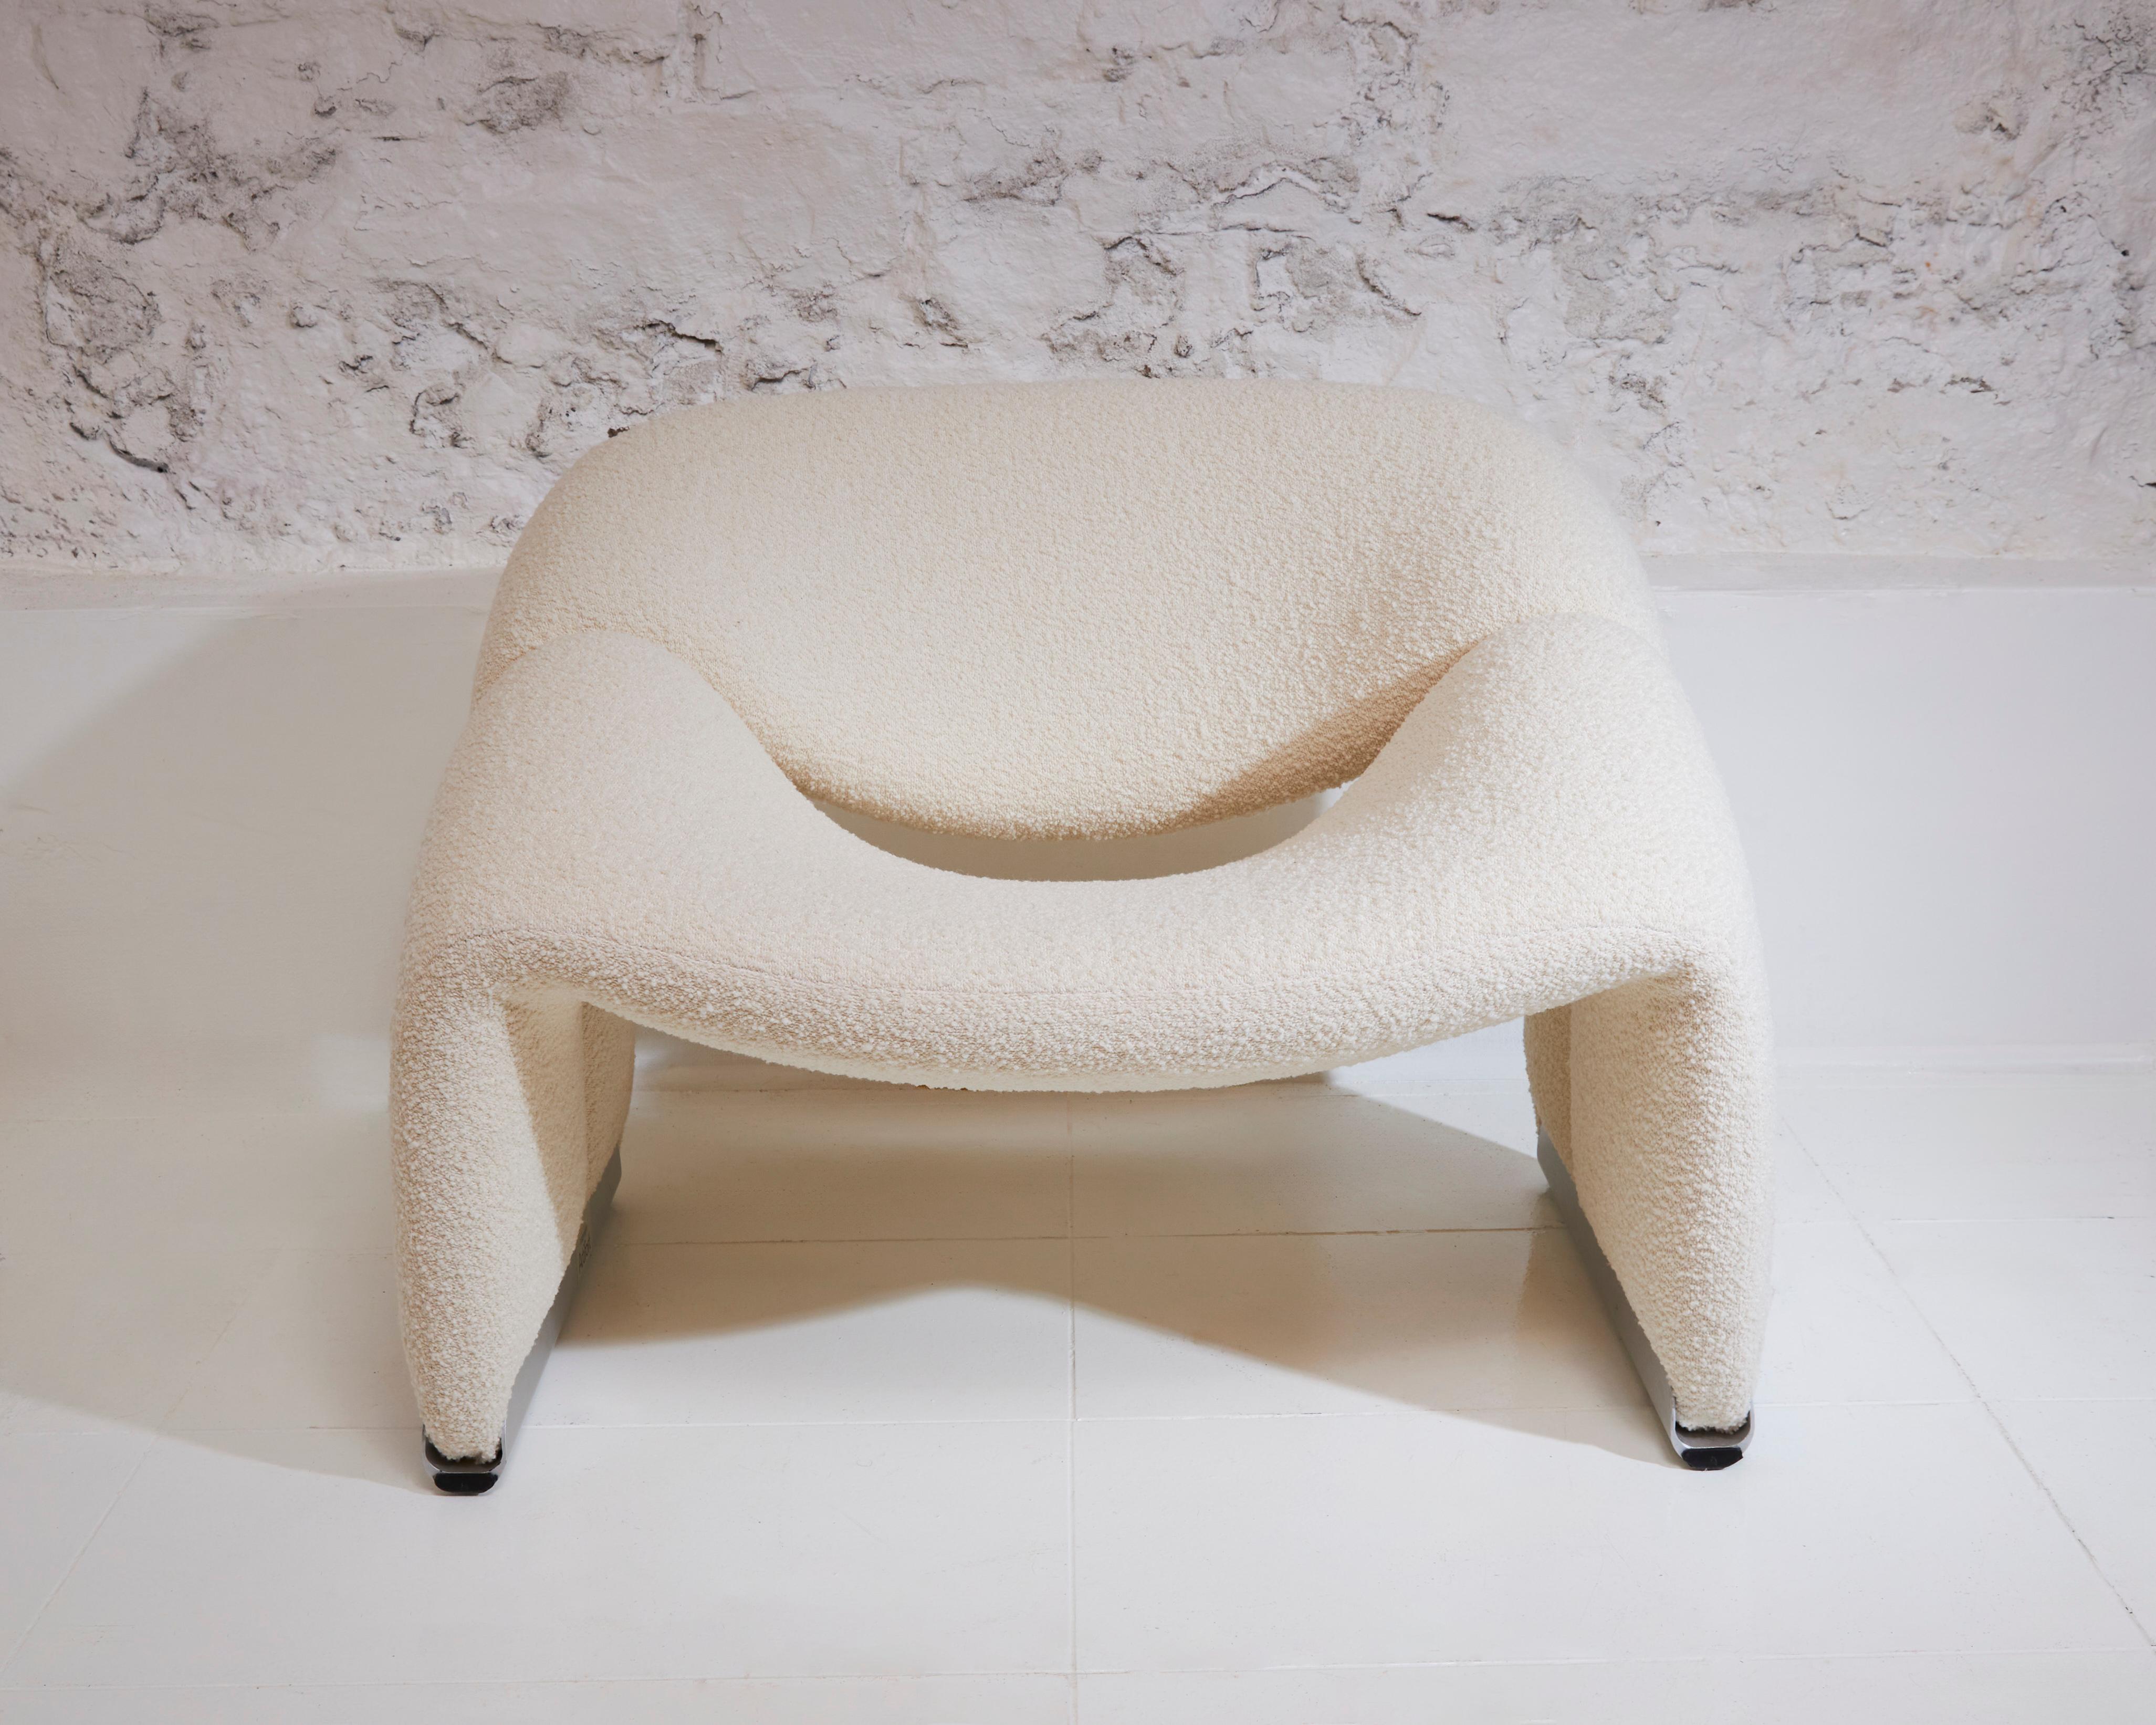 La chaise Groovy, conçue par Pierre Paulin, incarne l'esprit des années 60 et 70 avec son design innovant et son style iconique. Paulin, le célèbre designer français, a créé la chaise Groovy en 1966 pour Artifort, un important fabricant de meubles